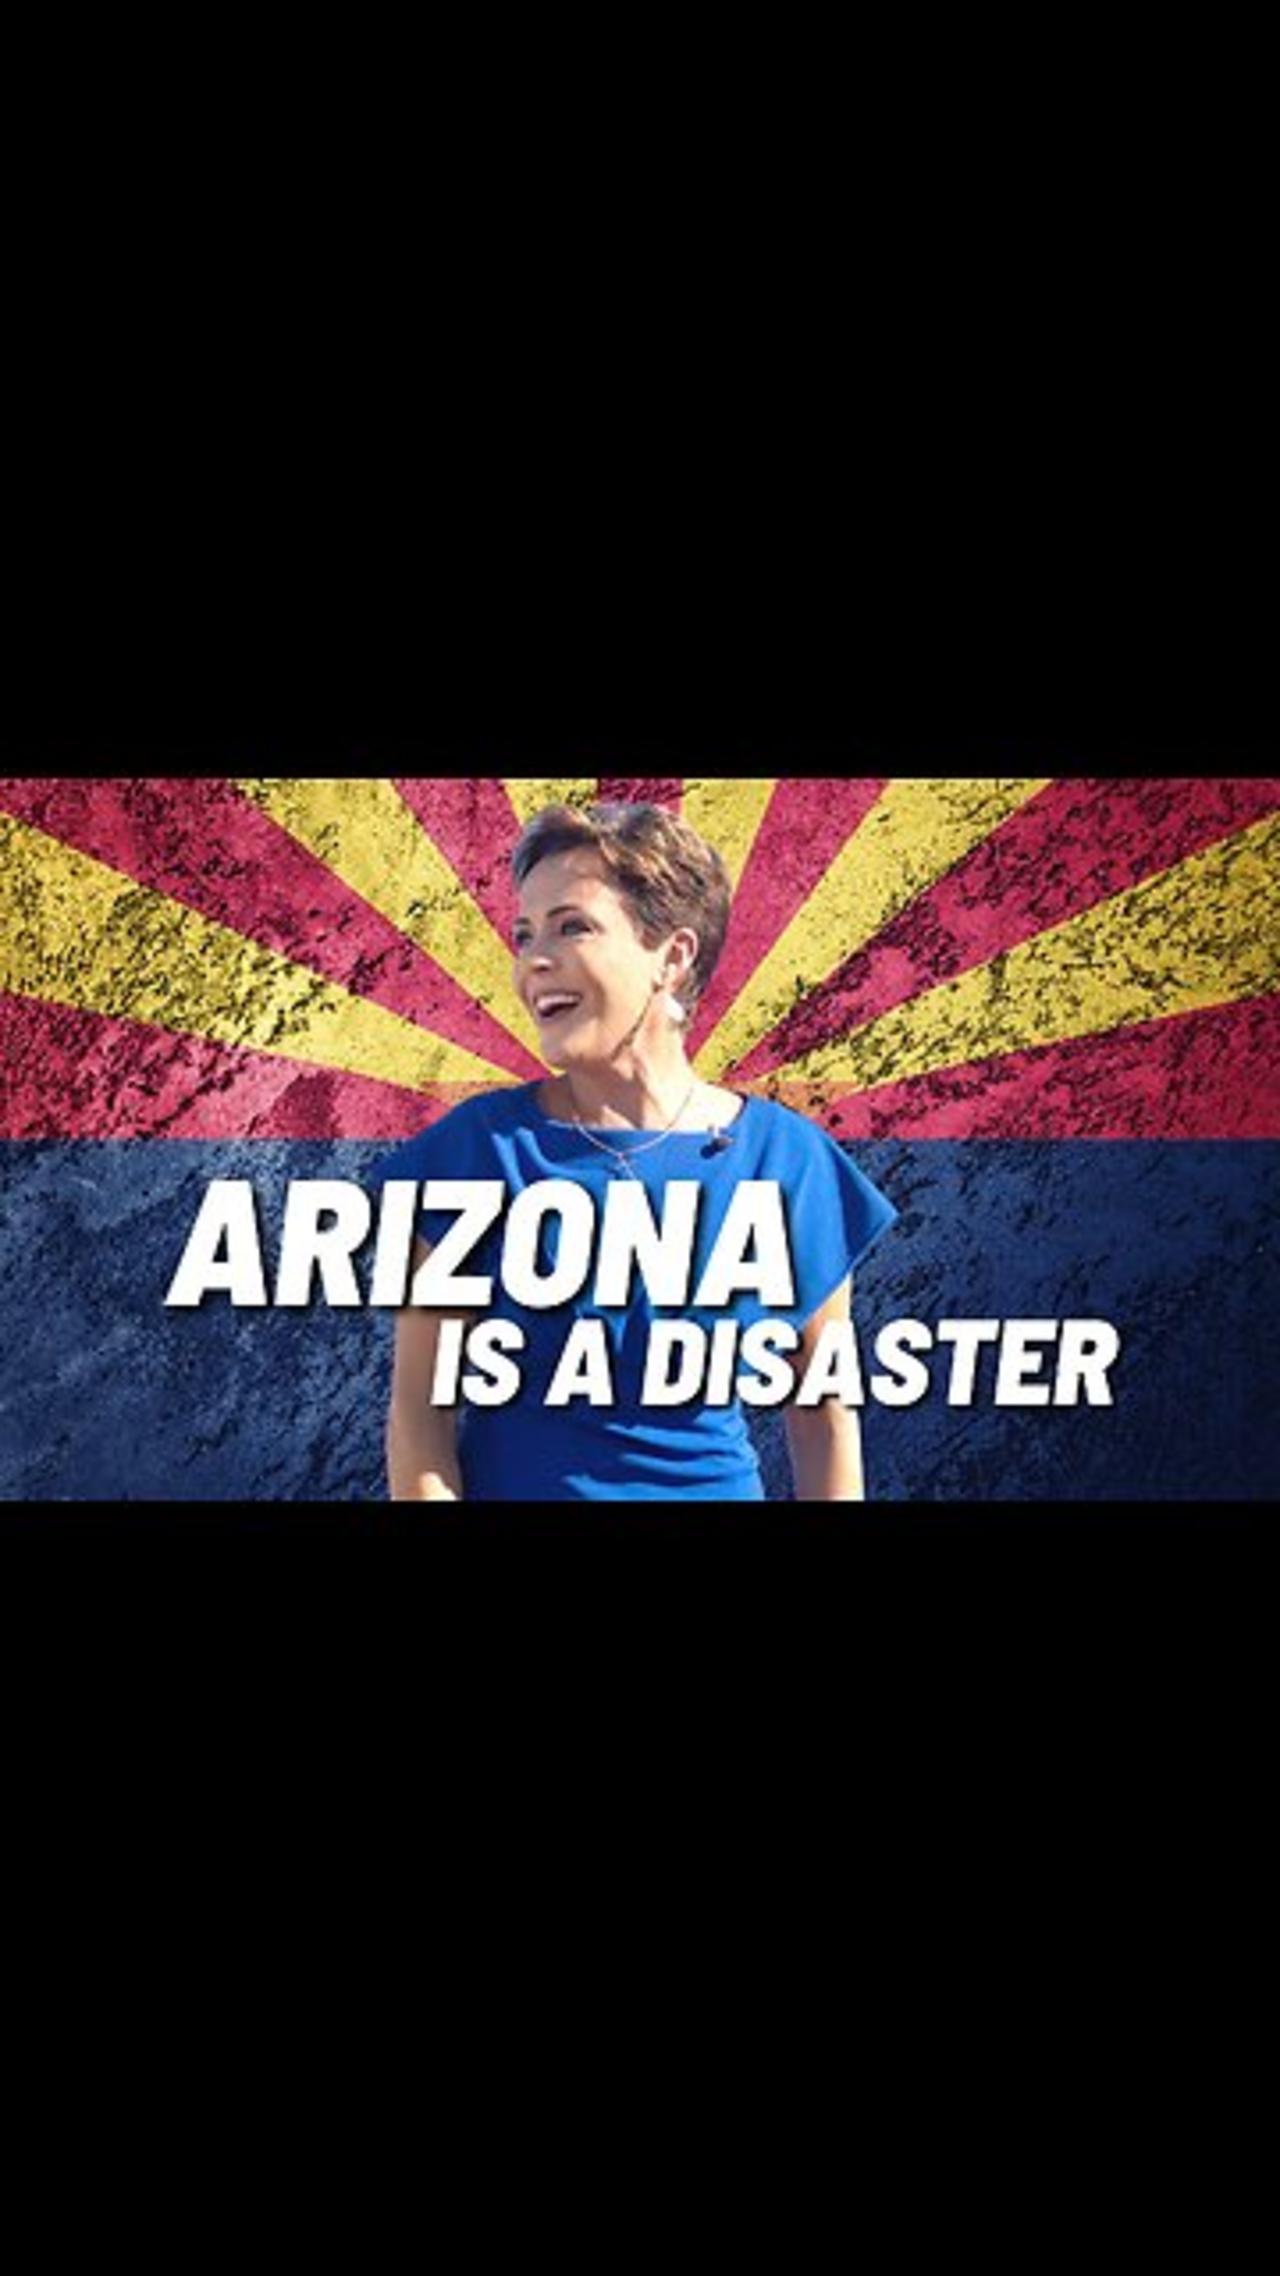 Arizona's Election was a Disaster. #Arizona, KariLake #Florida, #DeSantis, #Rubio